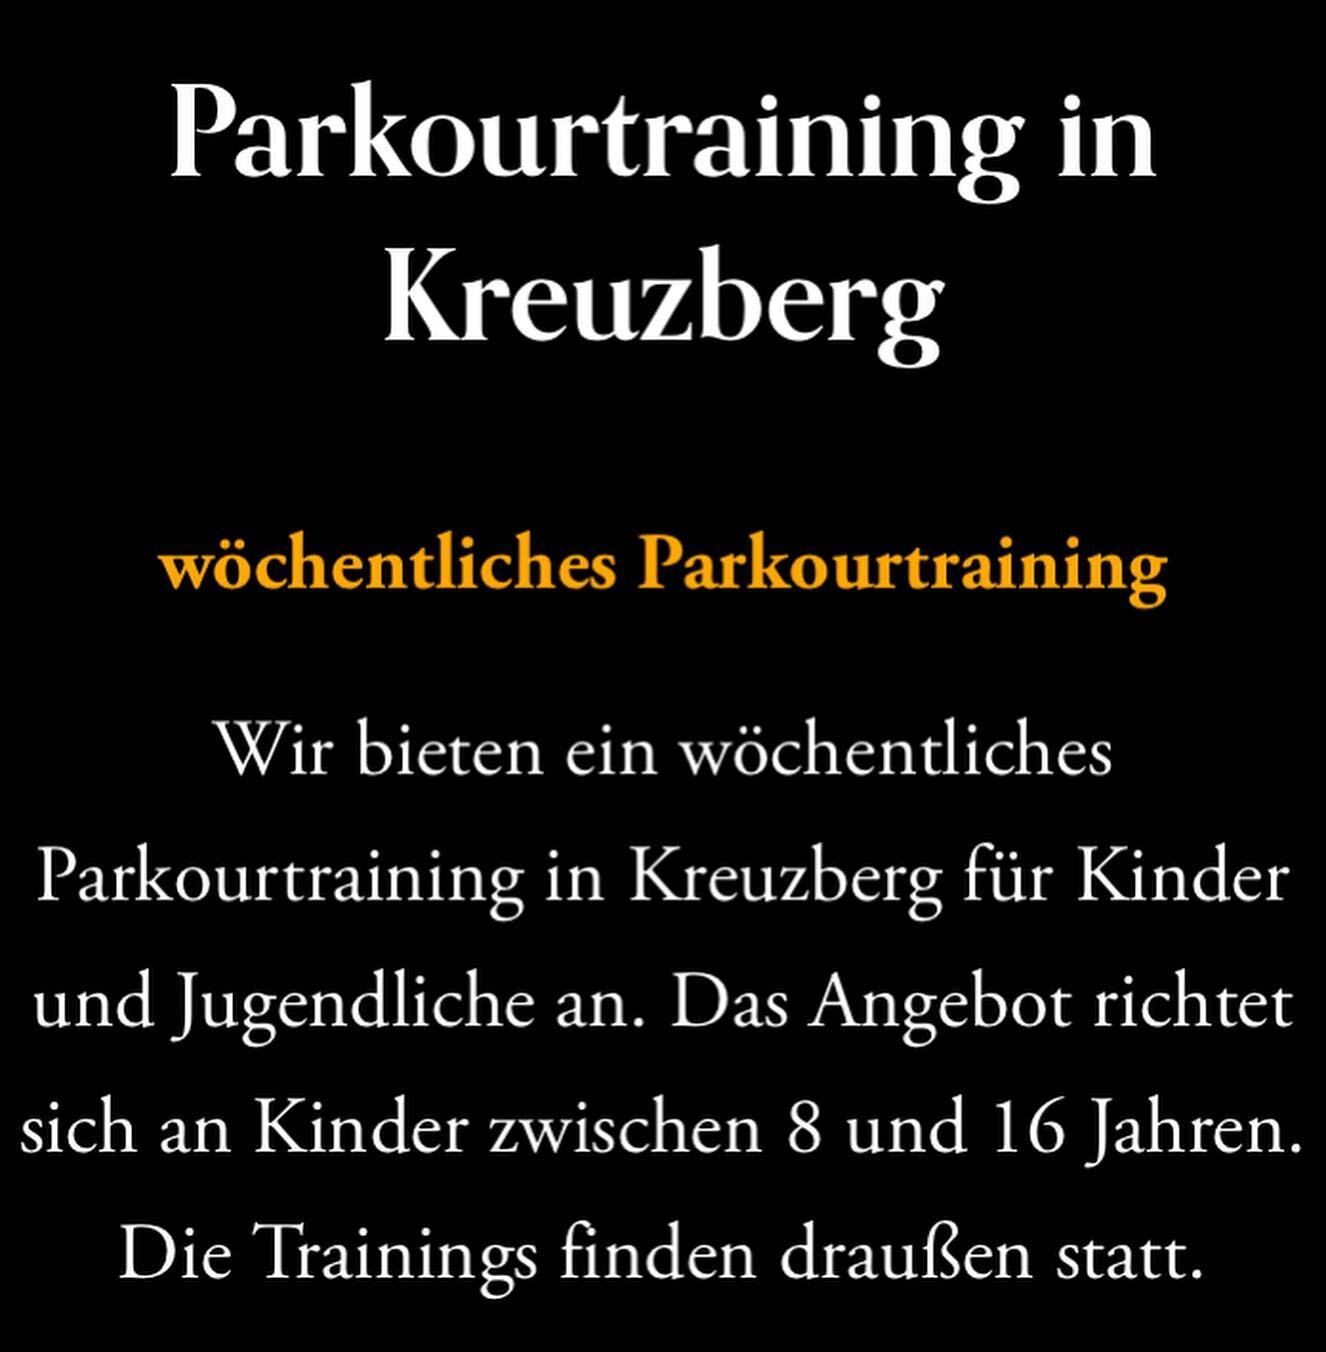 Neue Gruppen in Kreuzberg! Mehr Infos auf unserer Website 🥷
.
.
.
#parkourfamily #fun #freerunner #parkourlifestyle #run #tricks #storror #parkouring #motivation #acrobatics #parkourforlife #flow #extreme #gopro #freeruning #parkourtv #parkourislife